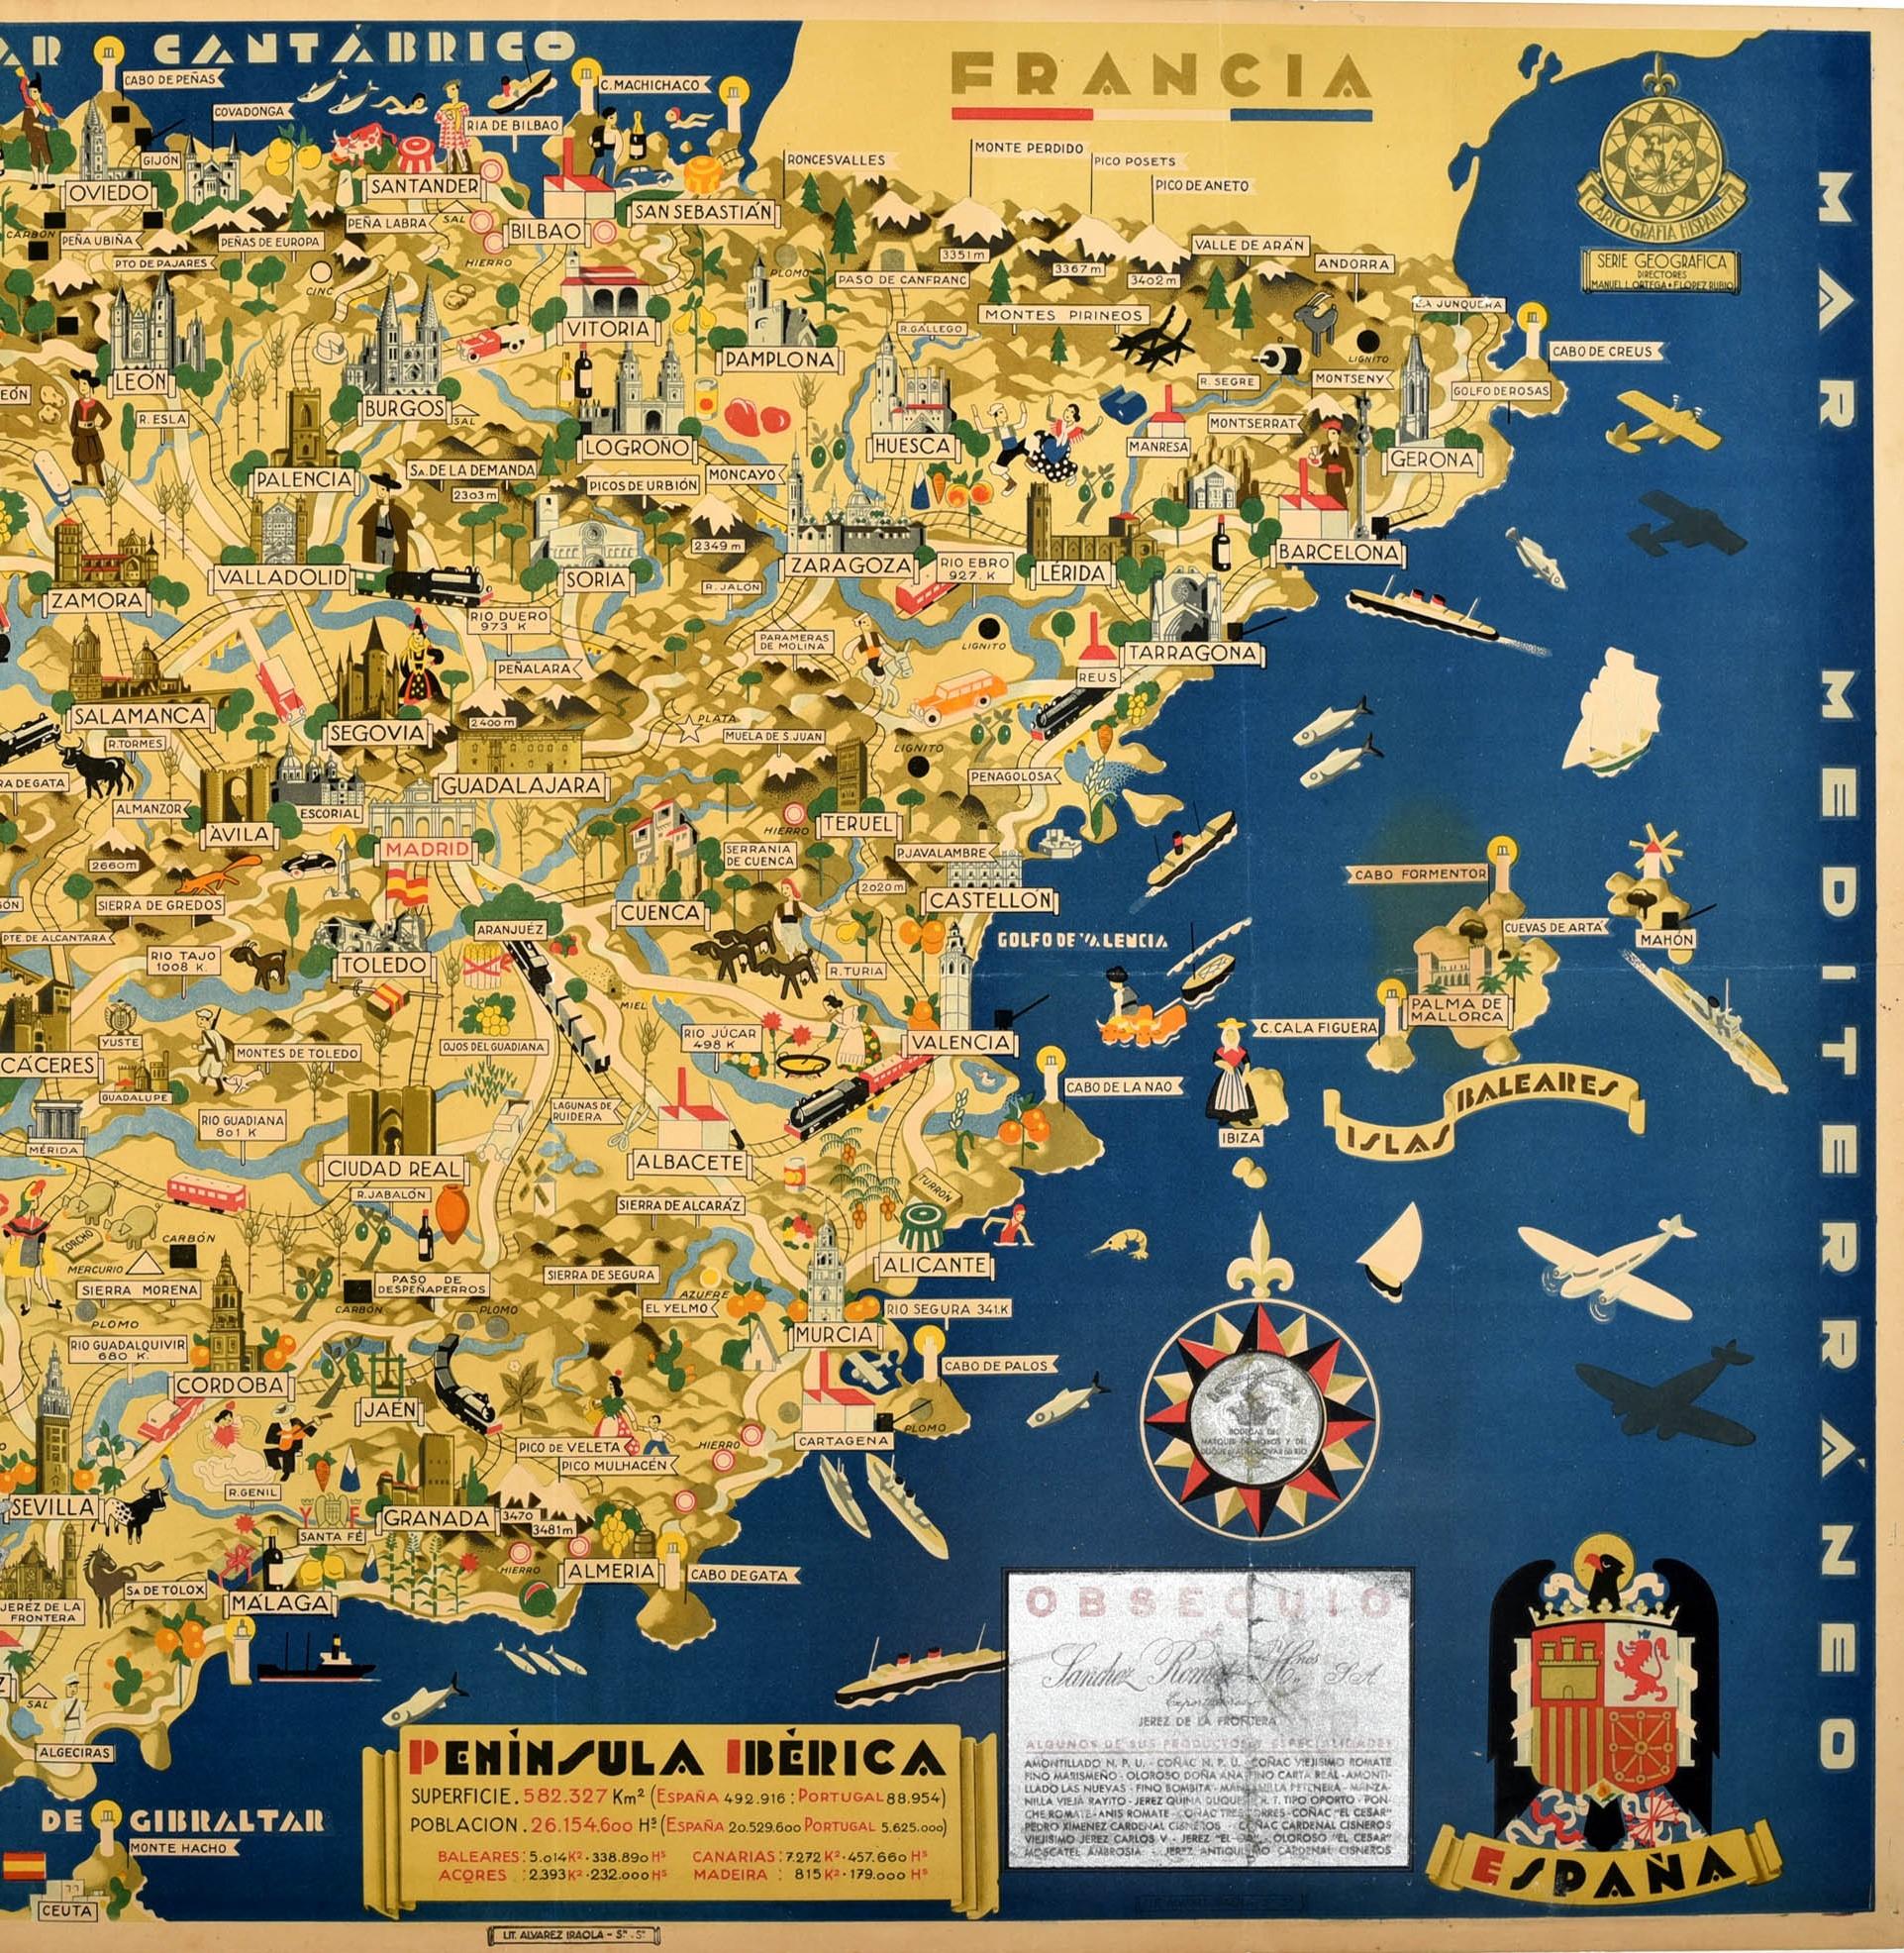 peninsula iberica map